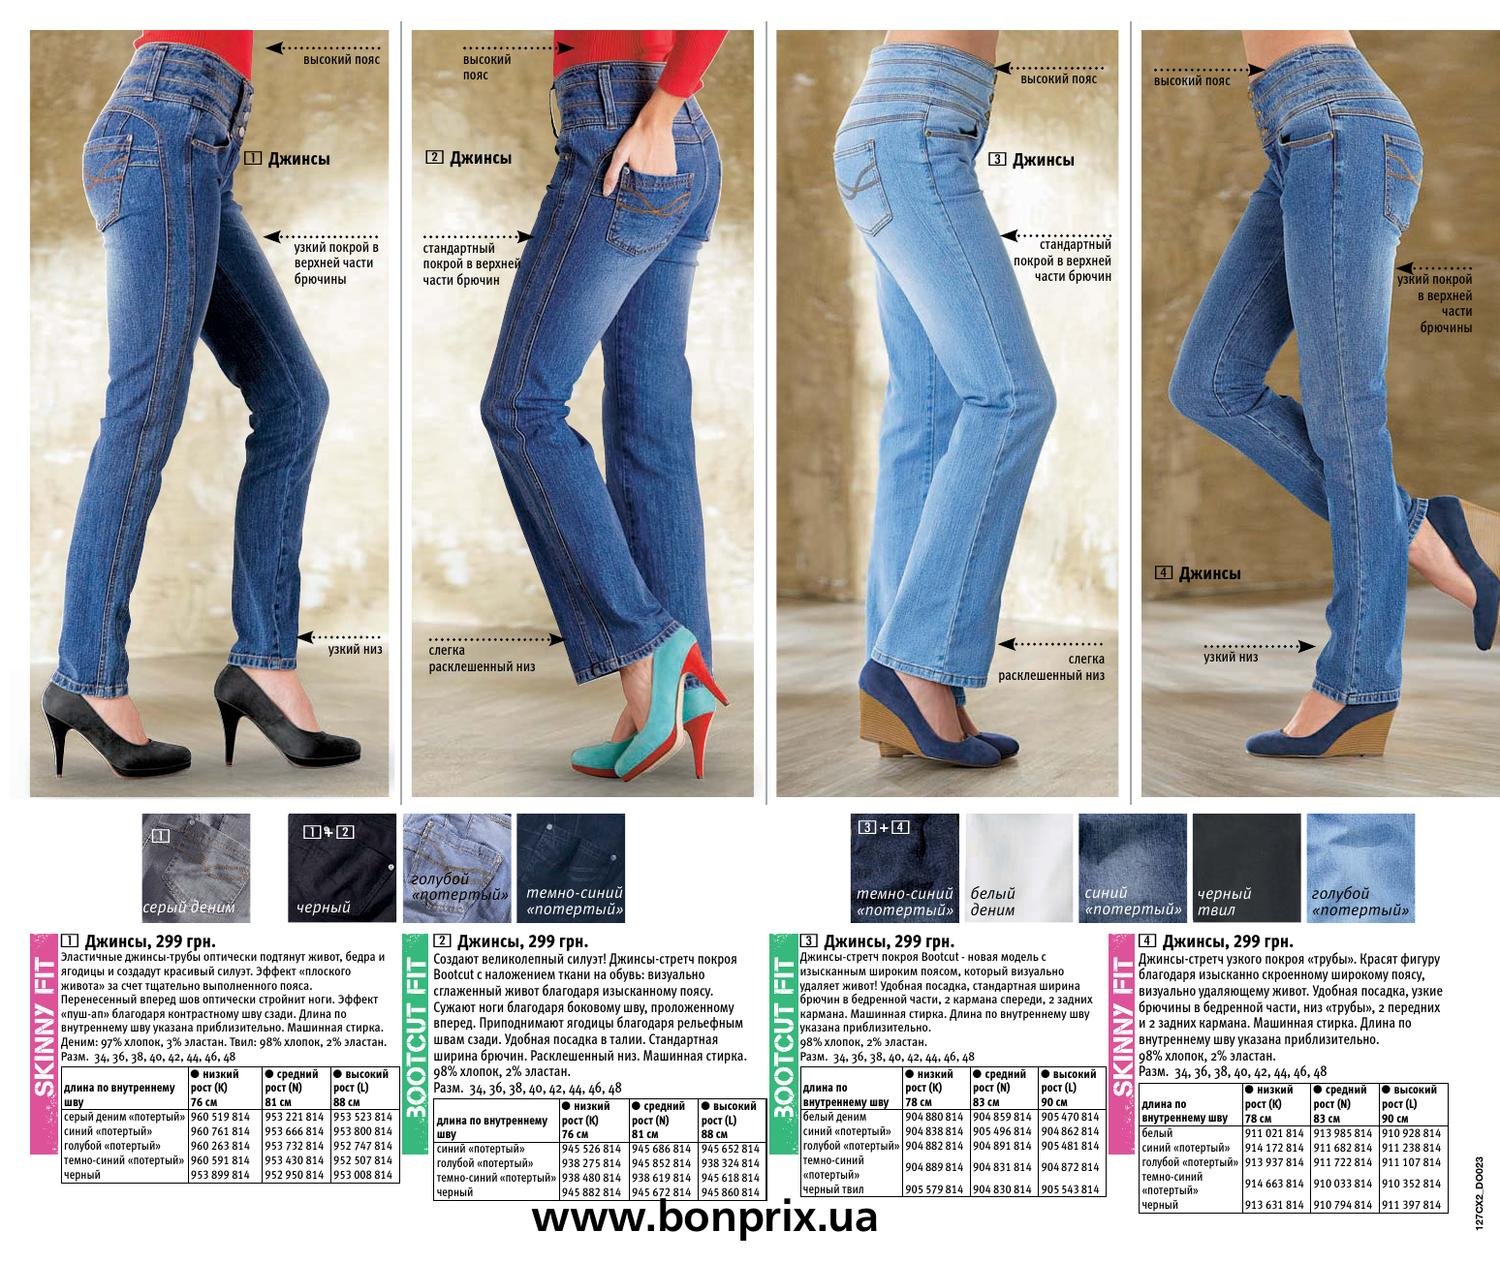 Виды джинсов